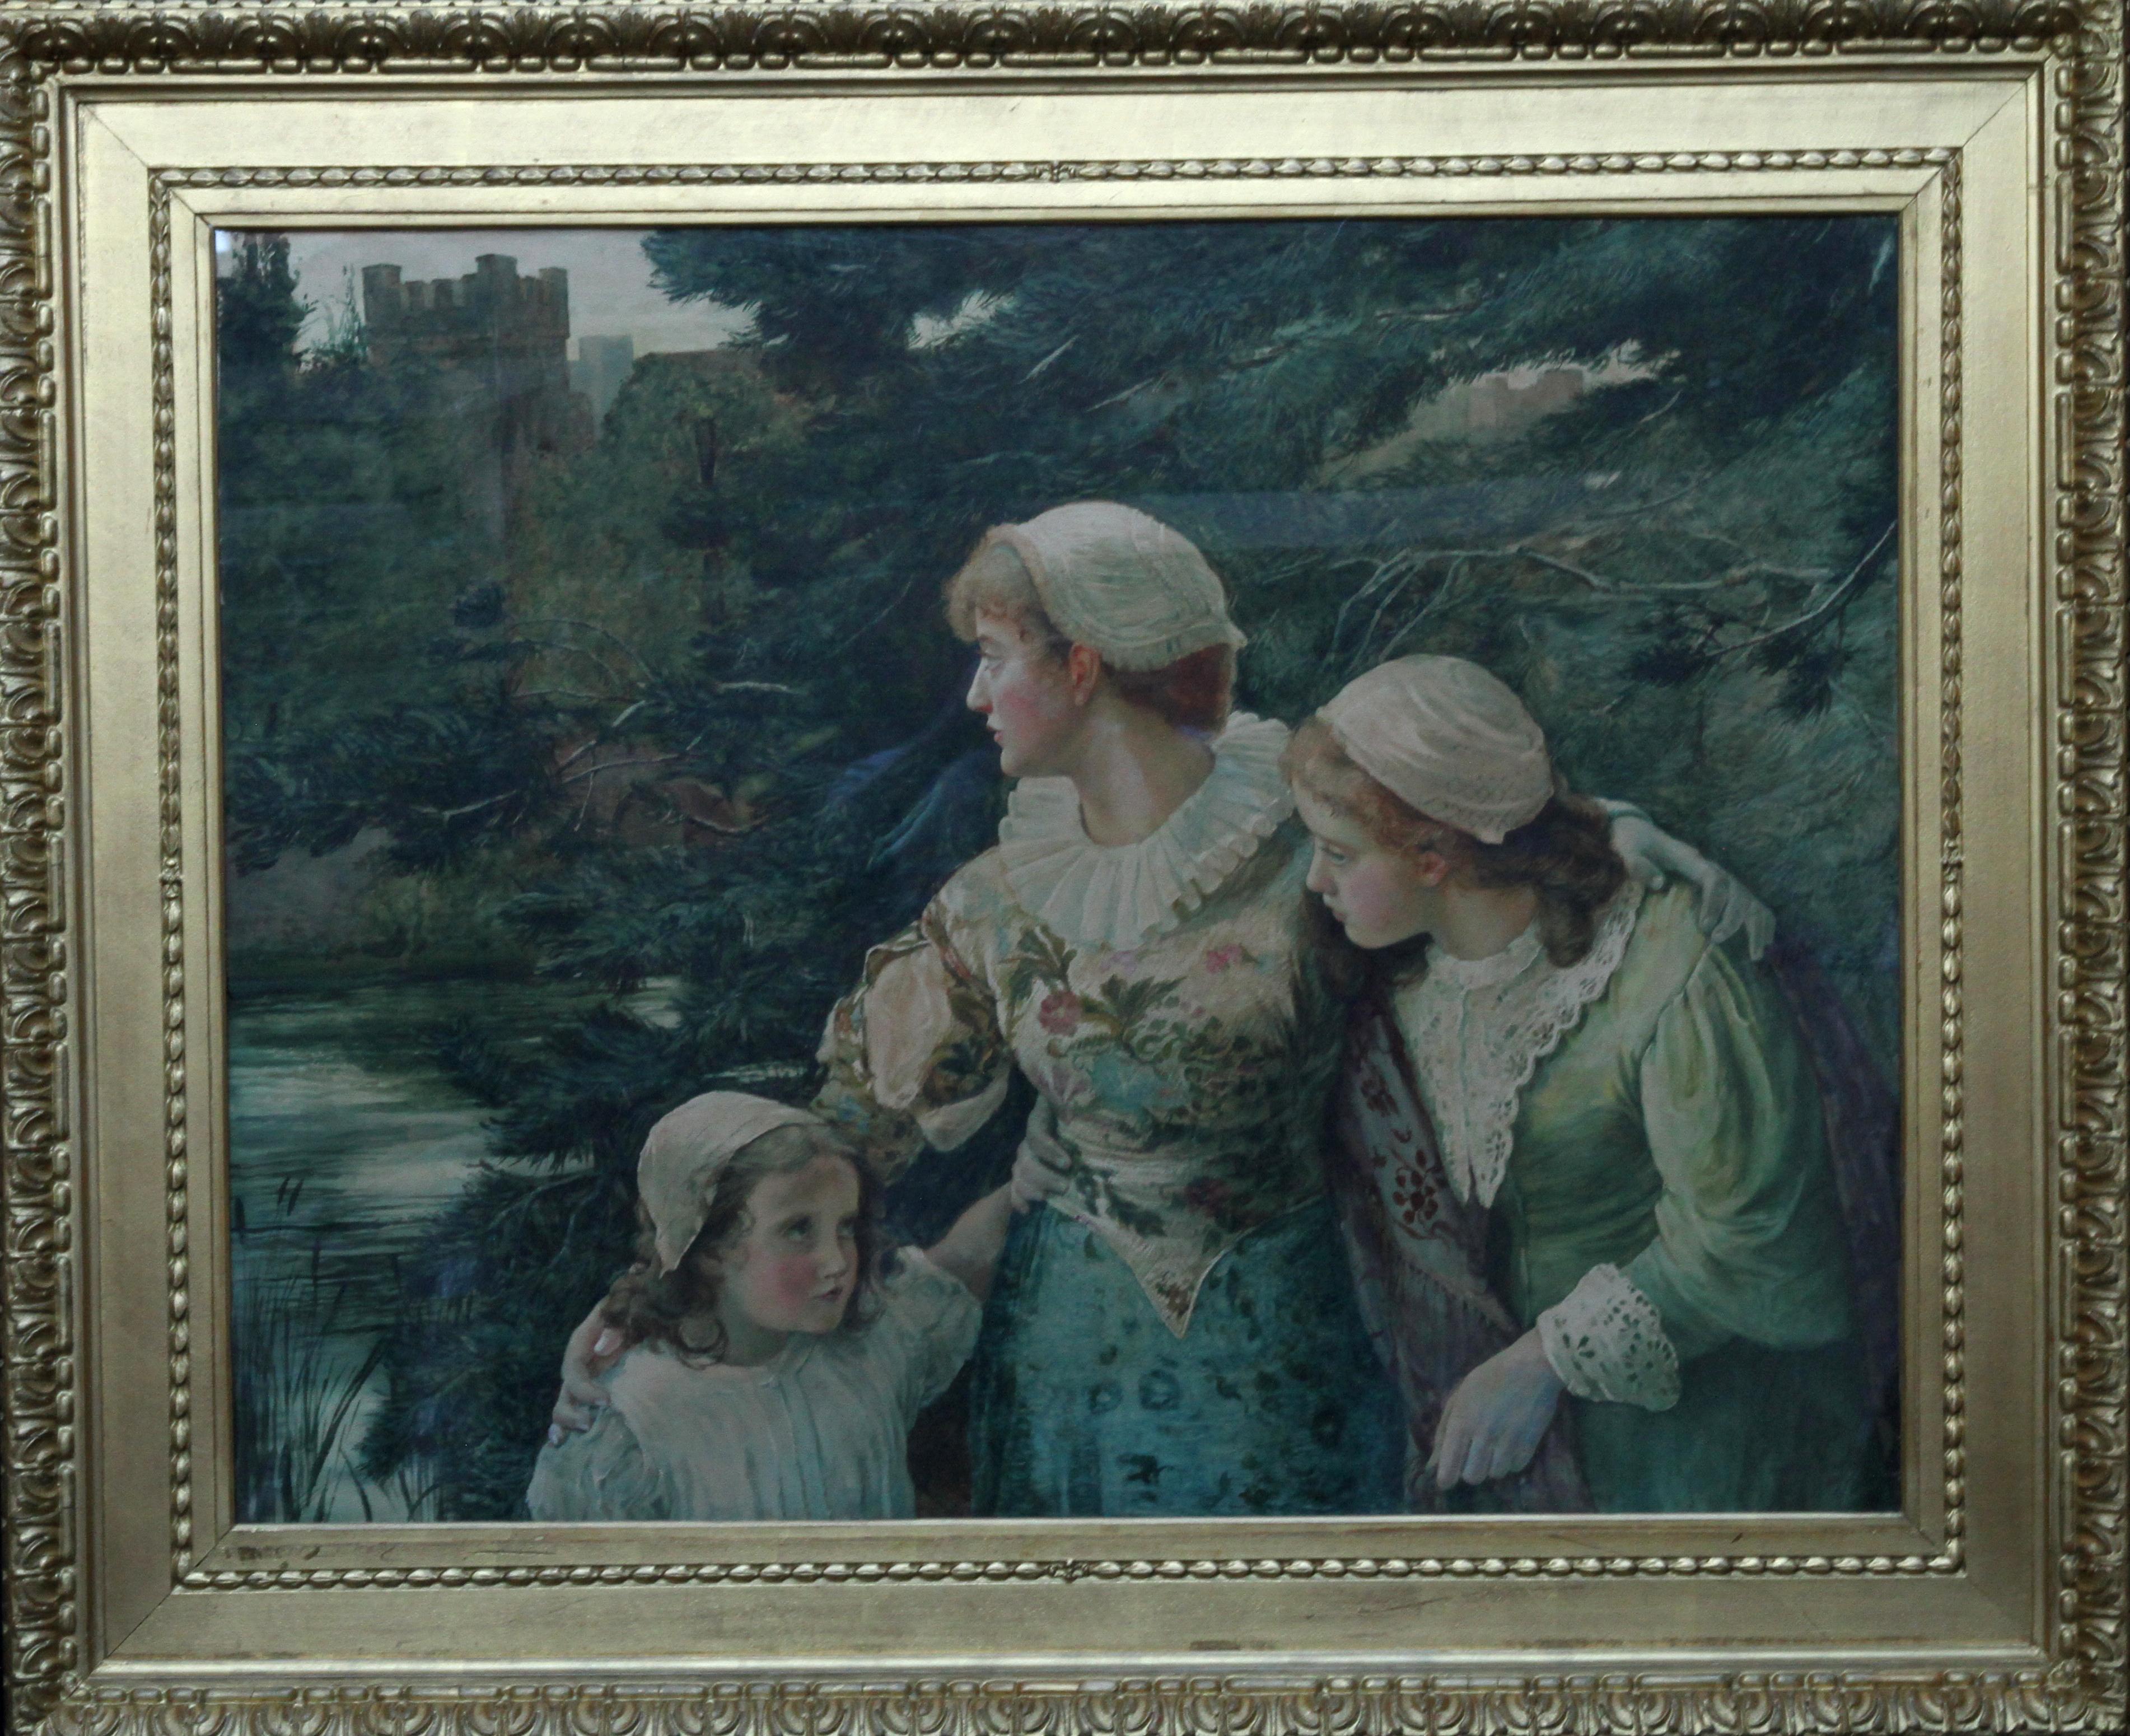 Portrait Marcella M Walker - The Village Maids - L'art victorien britannique a exposé une peinture à l'aquarelle de 1880